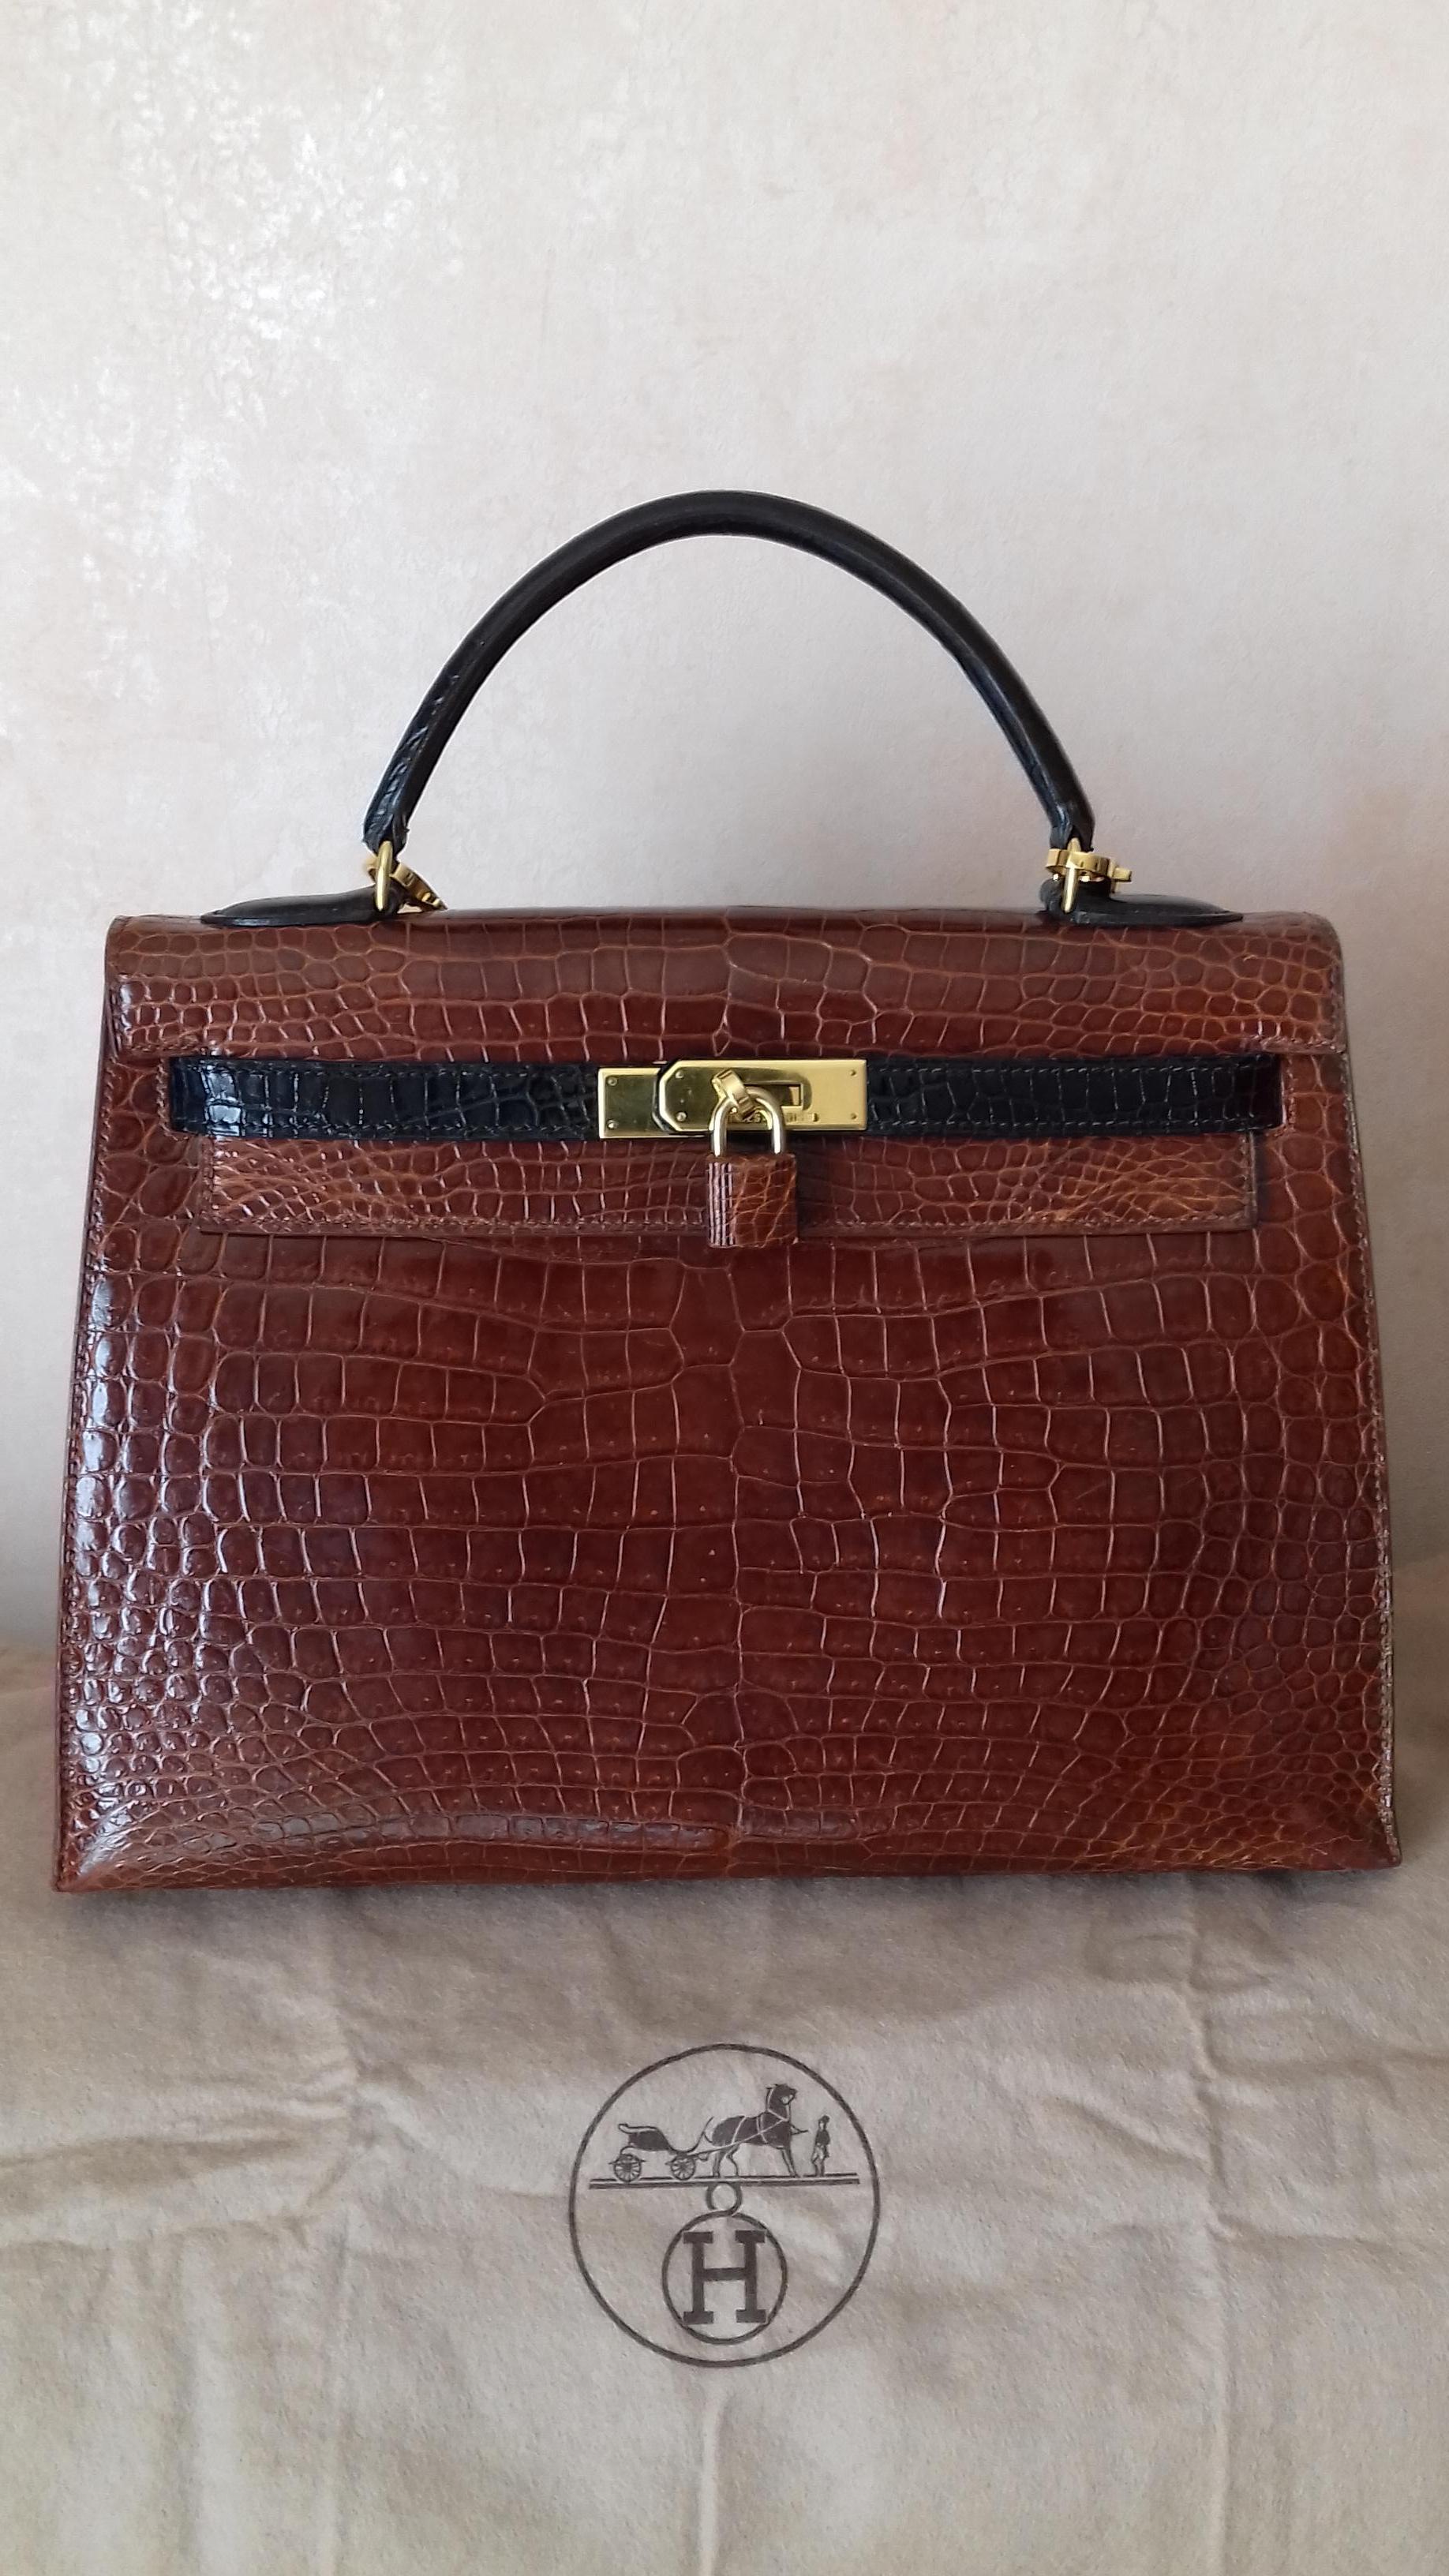 Exceptional Hermès Kelly Bag Vintage Bicolore Etrusque and Black Crocodile 33 cm 1